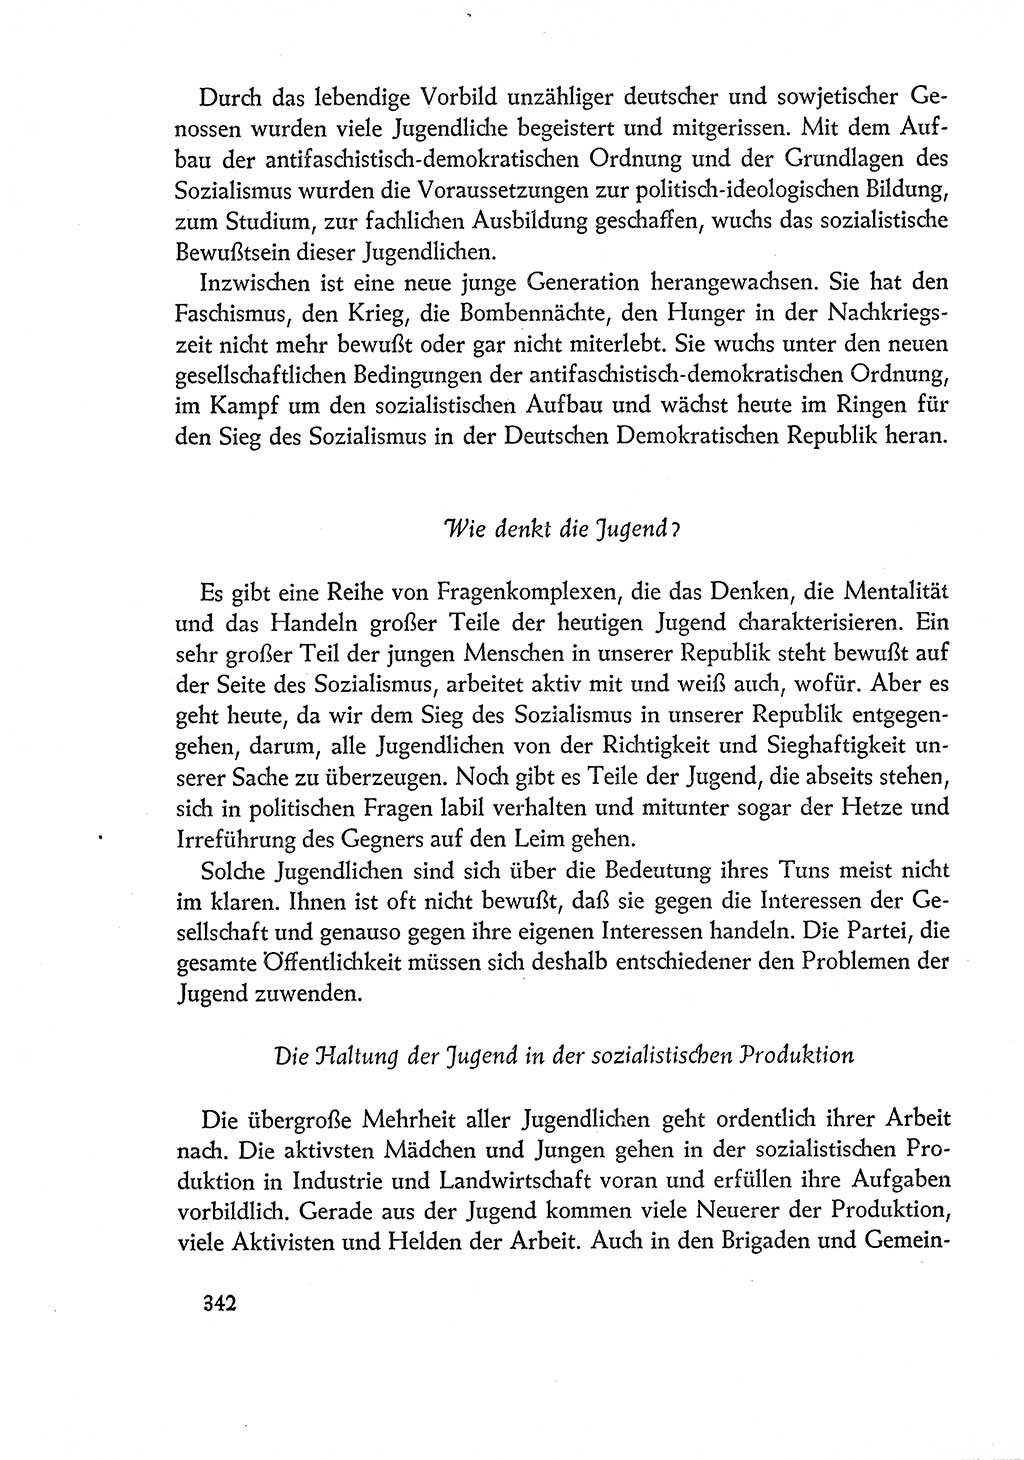 Dokumente der Sozialistischen Einheitspartei Deutschlands (SED) [Deutsche Demokratische Republik (DDR)] 1960-1961, Seite 342 (Dok. SED DDR 1960-1961, S. 342)